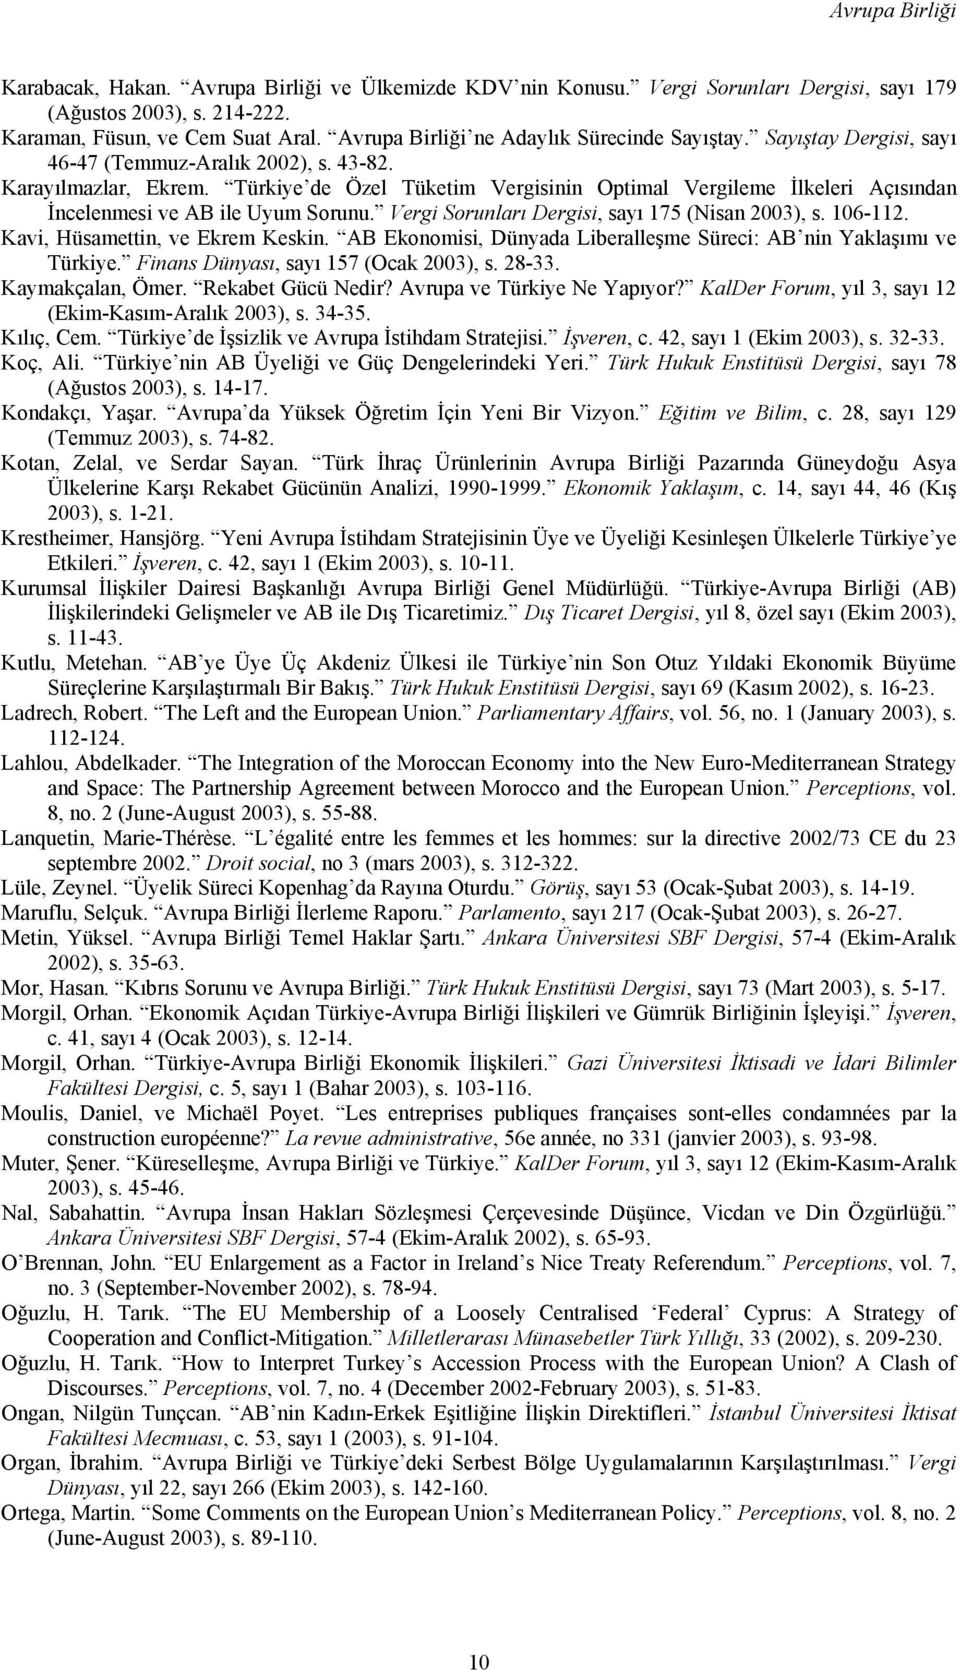 Türkiye de Özel Tüketim Vergisinin Optimal Vergileme İlkeleri Açısından İncelenmesi ve AB ile Uyum Sorunu. Vergi Sorunları Dergisi, sayı 175 (Nisan 2003), s. 106-112.